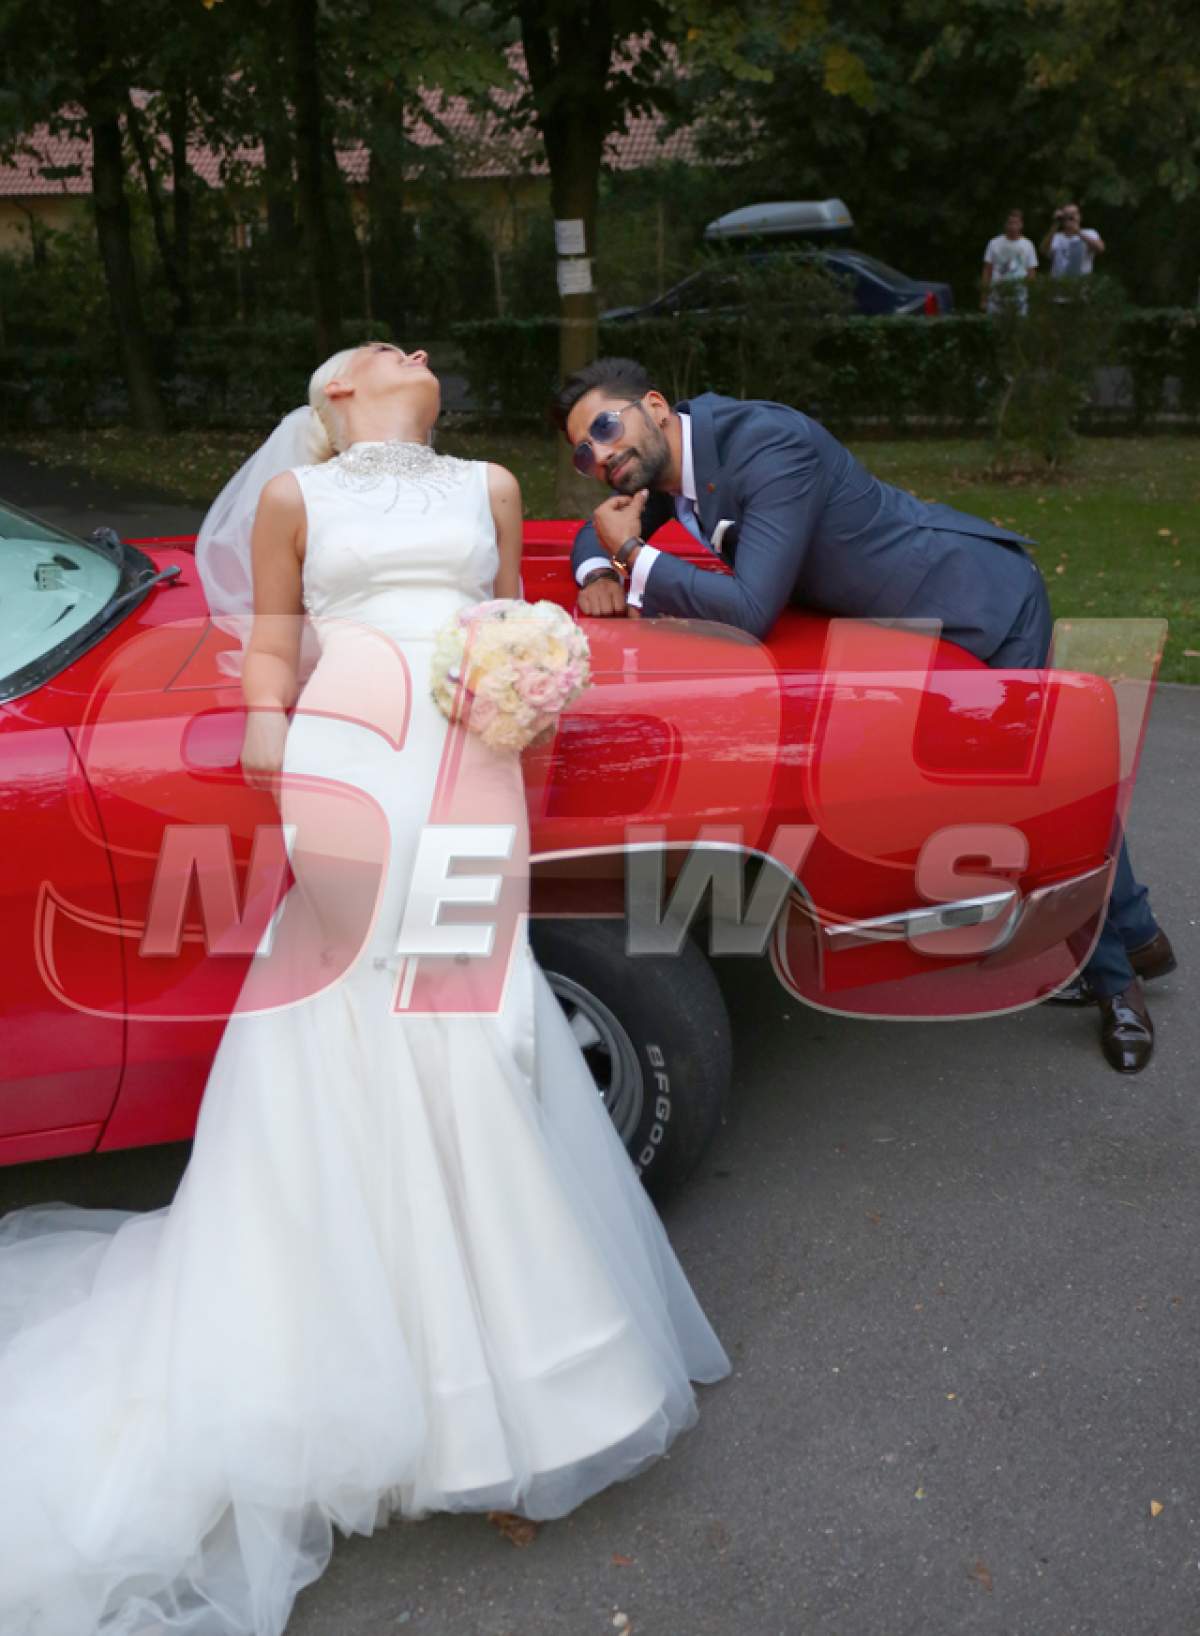 Imagini senzaţionale de la nunta lui Connect-R cu Misha! Fotografiile pe care nimeni nu le mai are